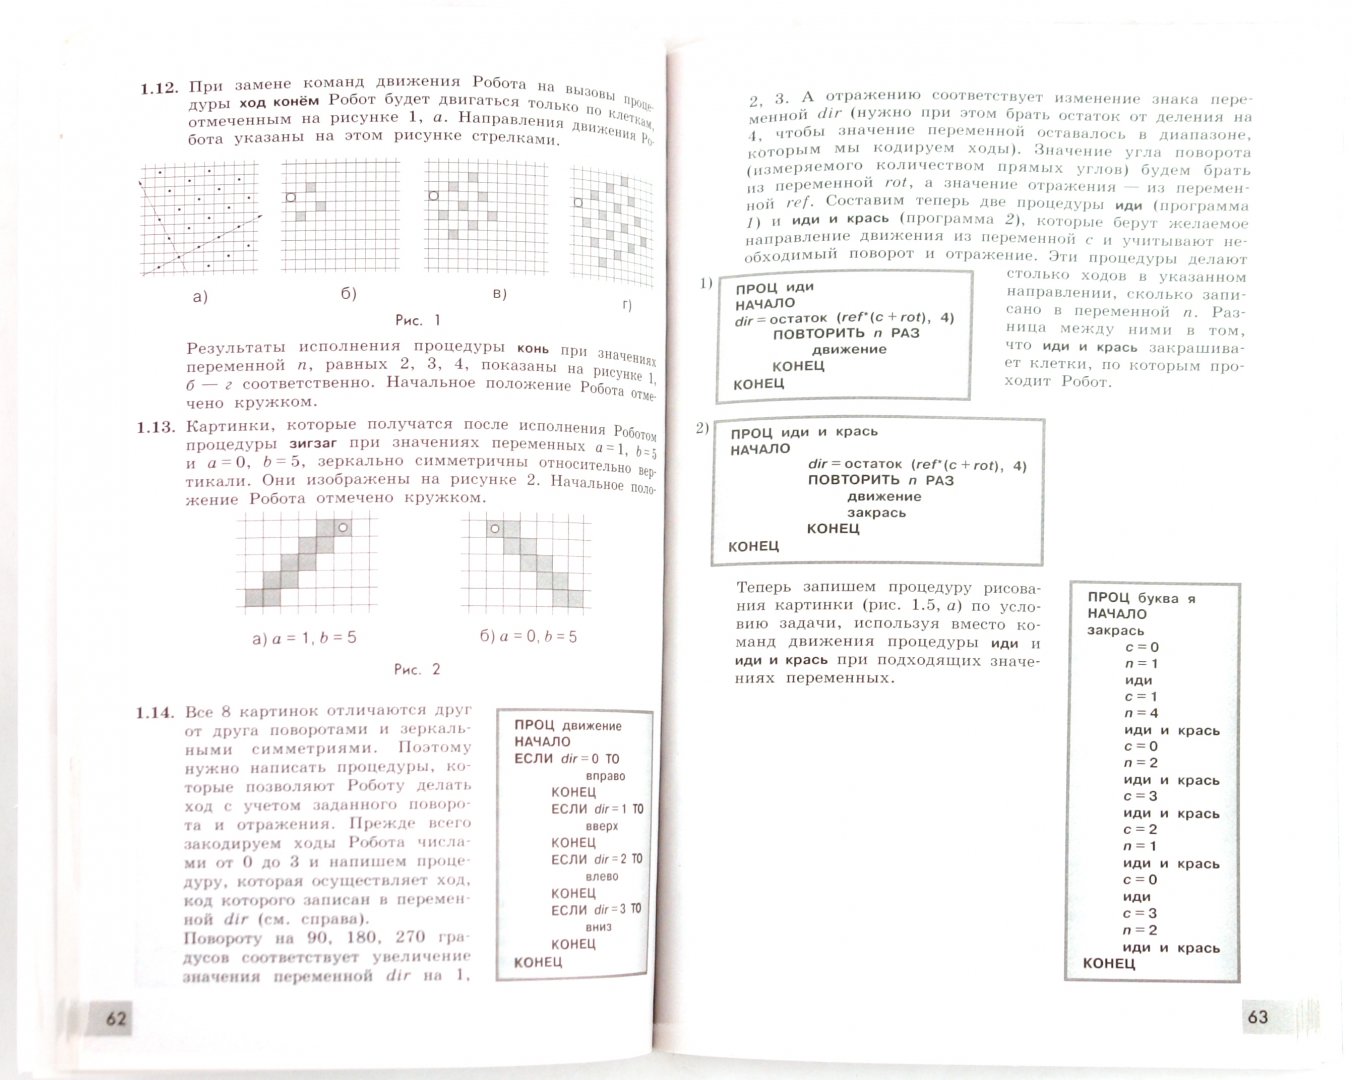 Иллюстрация 1 из 2 для Информатика. Алгоритмика. 7 класс: Книга для учителя - Ландо, Семенов, Вялый | Лабиринт - книги. Источник: Лабиринт